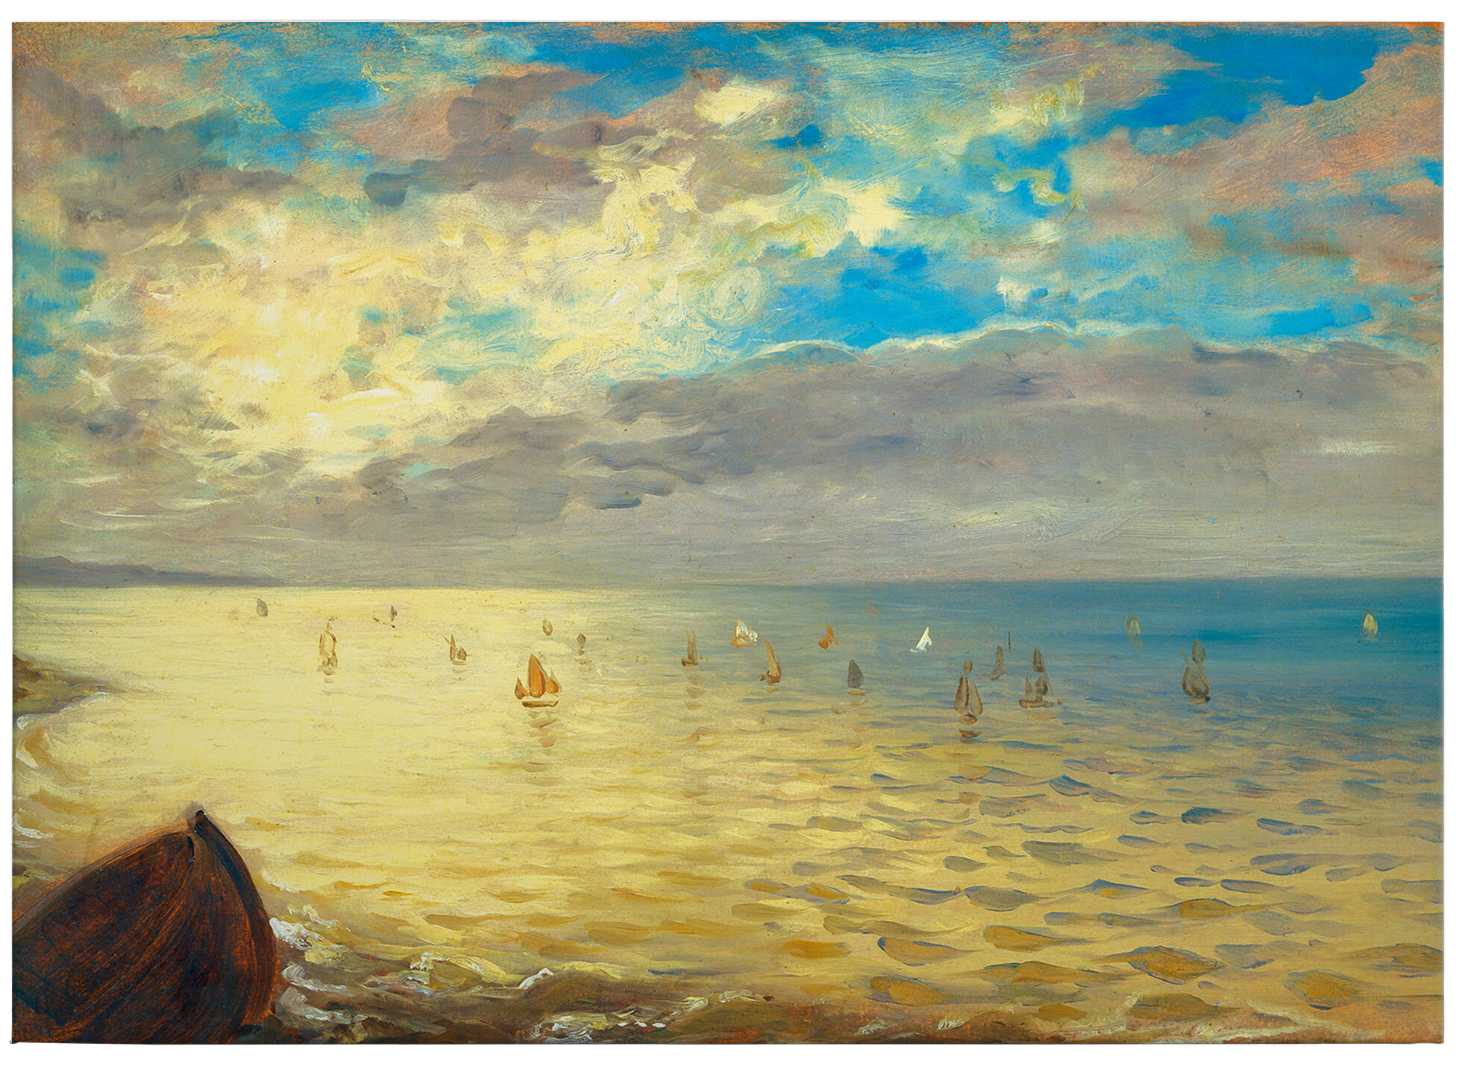             Schilderij op canvas "De Zee" van Delacroix - 0,70 m x 0,50 m
        